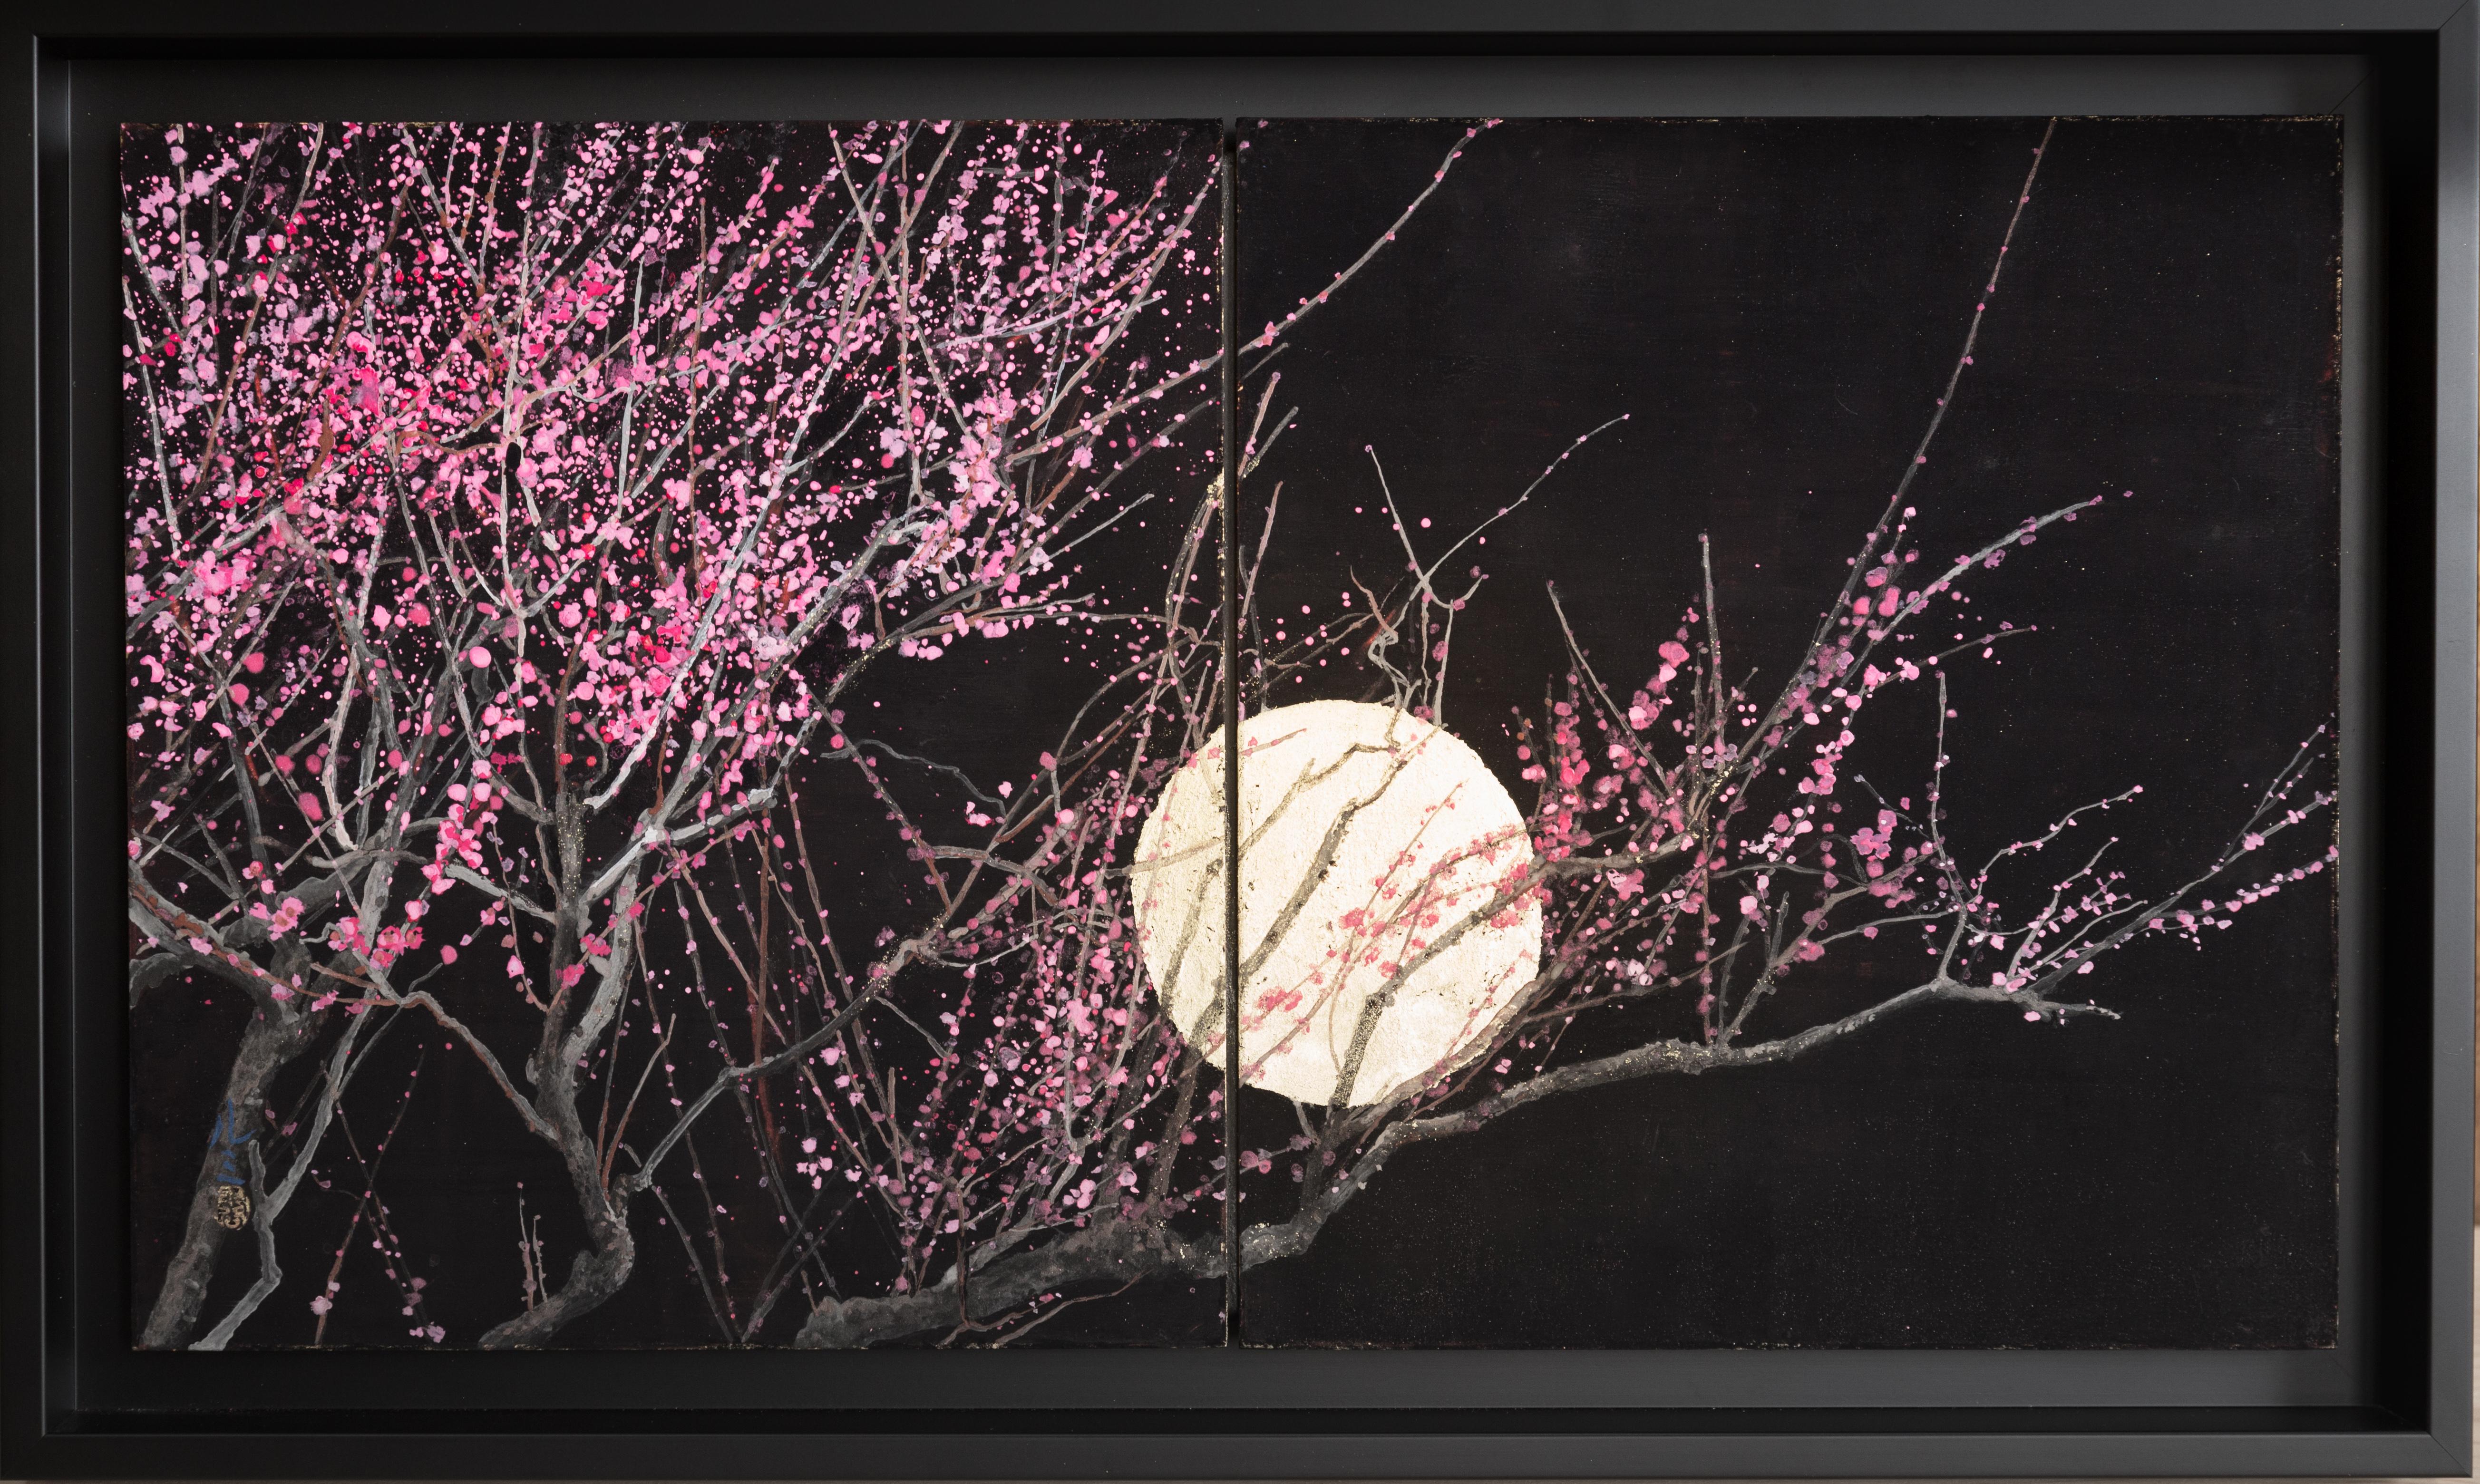 Quest'opera rappresenta un bellissimo albero rosa al chiaro di luna. È una celebrazione dell'amore, della tenerezza e della passione tra due esseri. Potrebbe quindi essere il regalo romantico ideale per esprimere i tuoi sentimenti alla persona amata